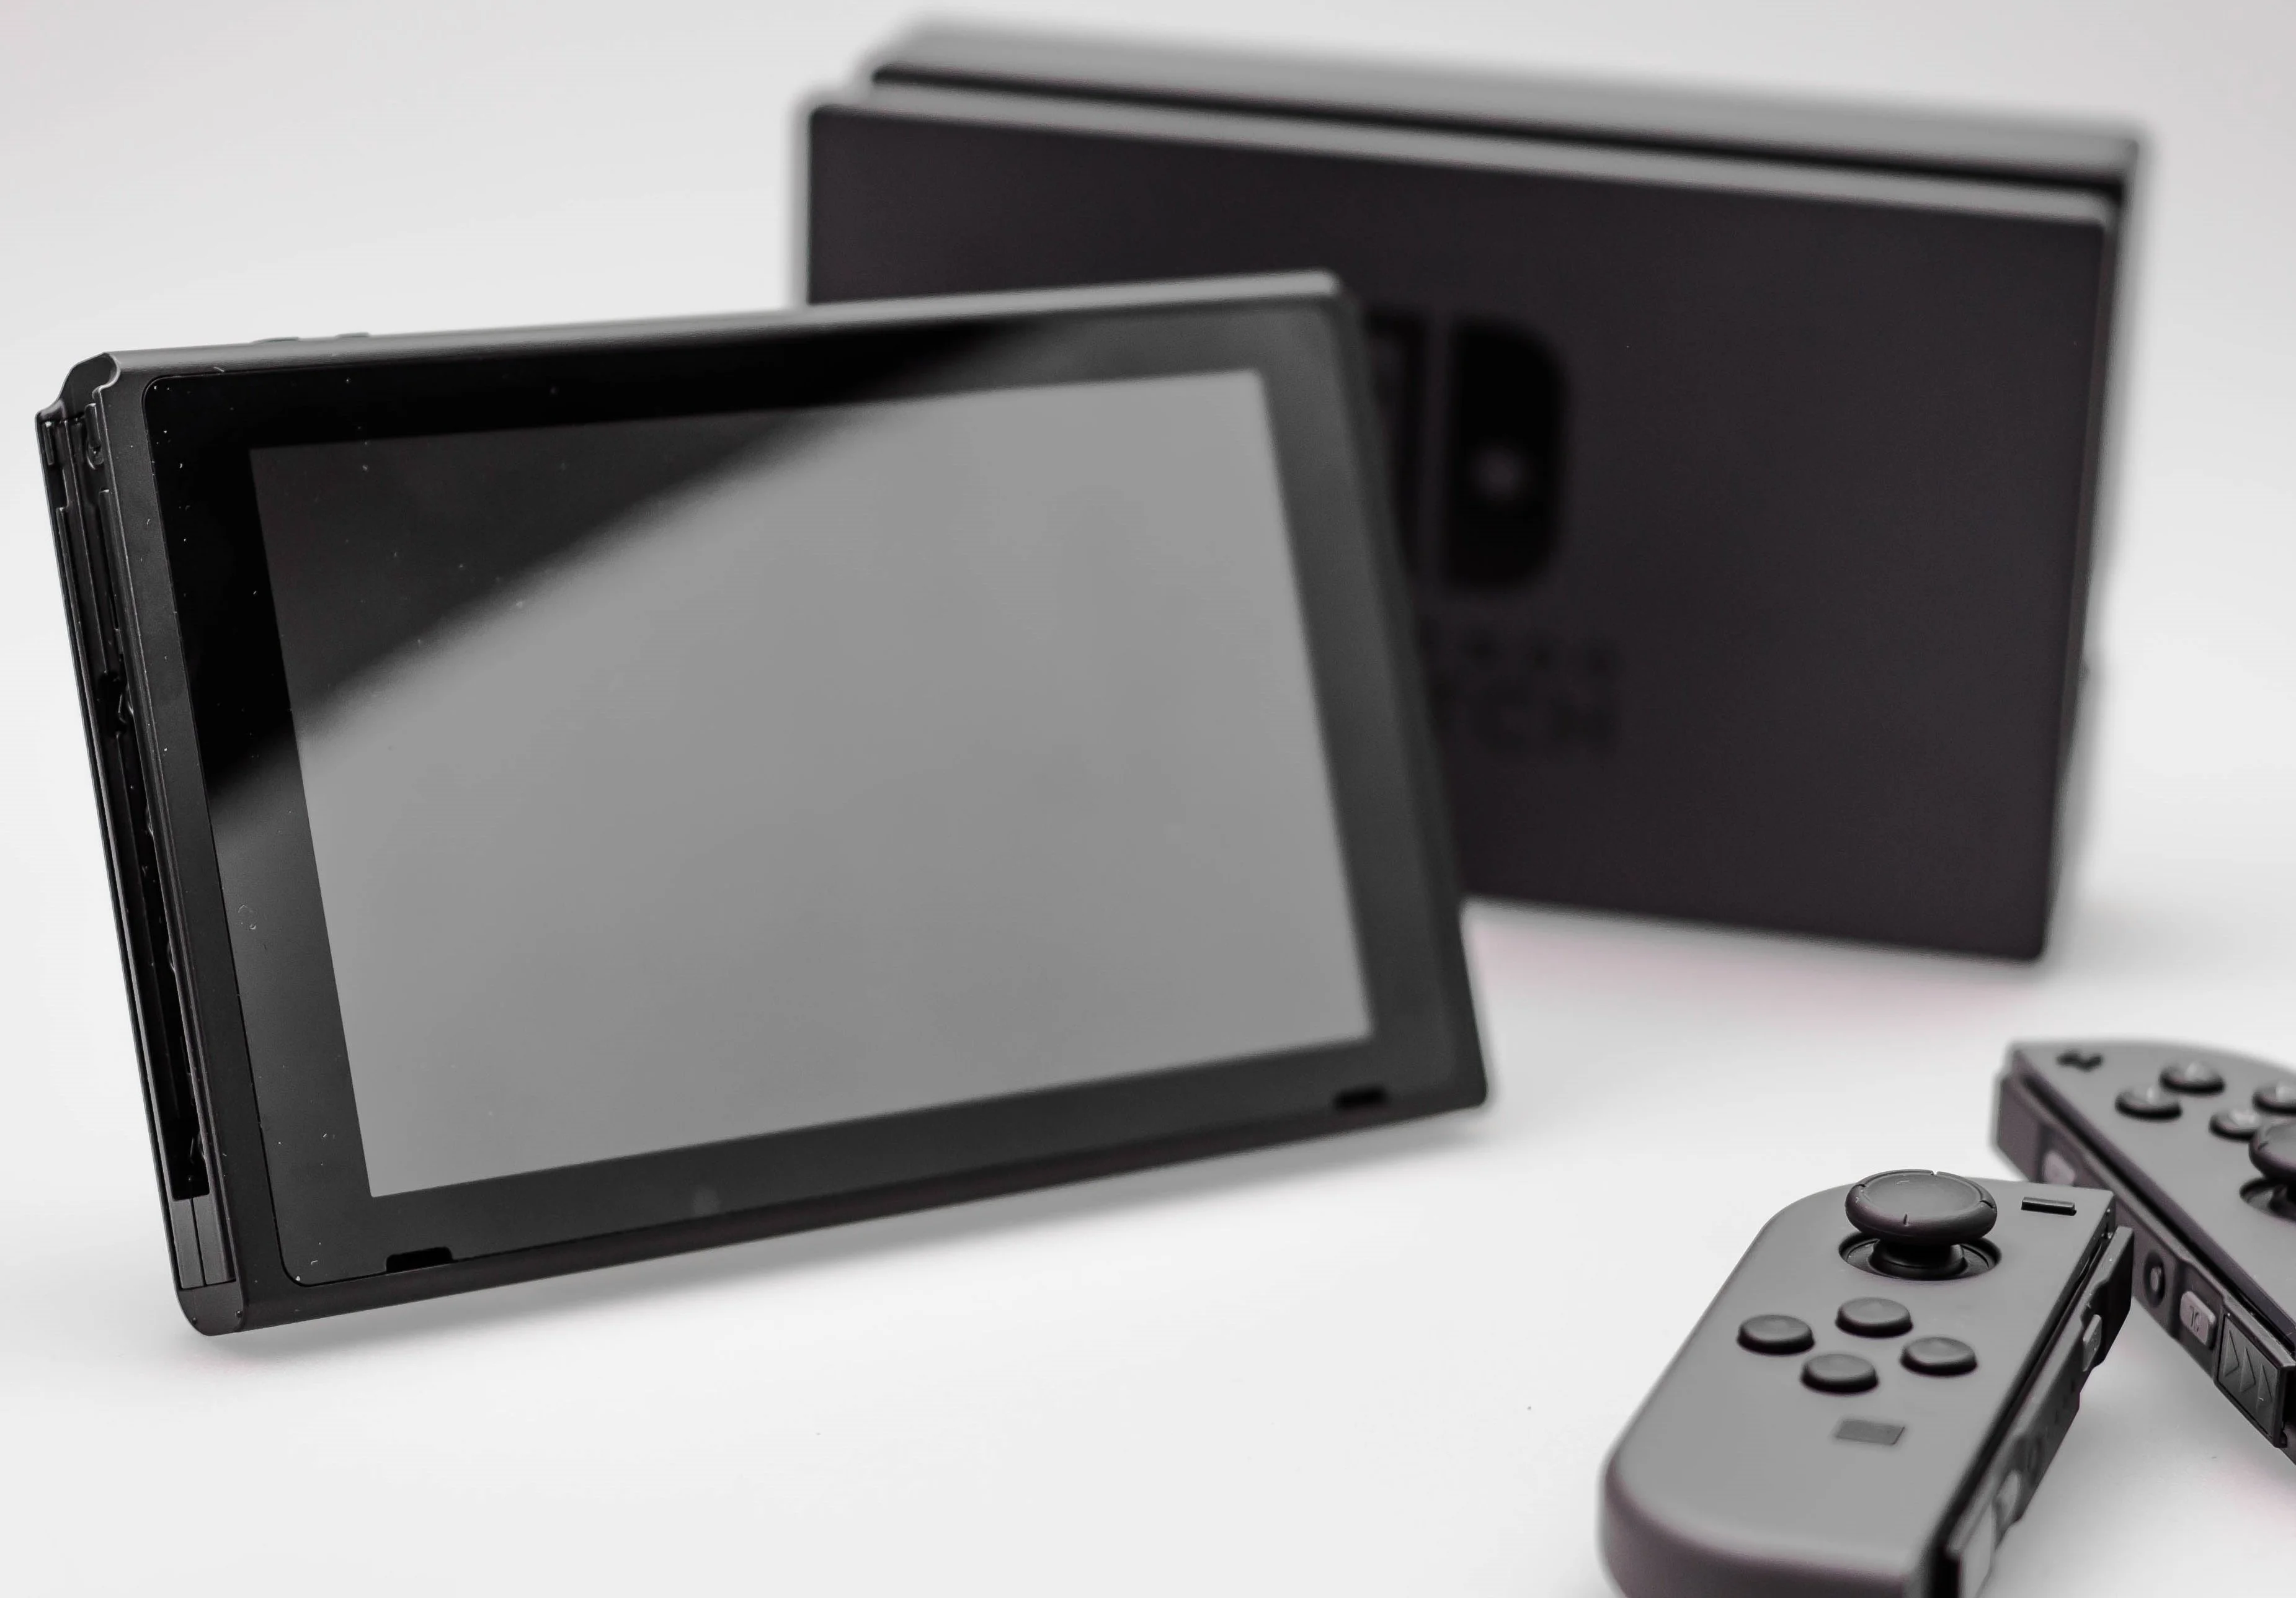 Гибридная консоль Nintendo Switch наконец добралась до официального мирового запуска, но, несмотря на большие ожидания и масштабную рекламную кампанию, реакция на Switch оказалась весьма неоднозначной. При близком знакомстве возникло множество вопросов к особенностям конструкции, софту и технической реализации новинки. Мы специально не стали торопиться с обзором, чтобы составить максимально объективное мнение о Switch, и теперь делимся им с вами.